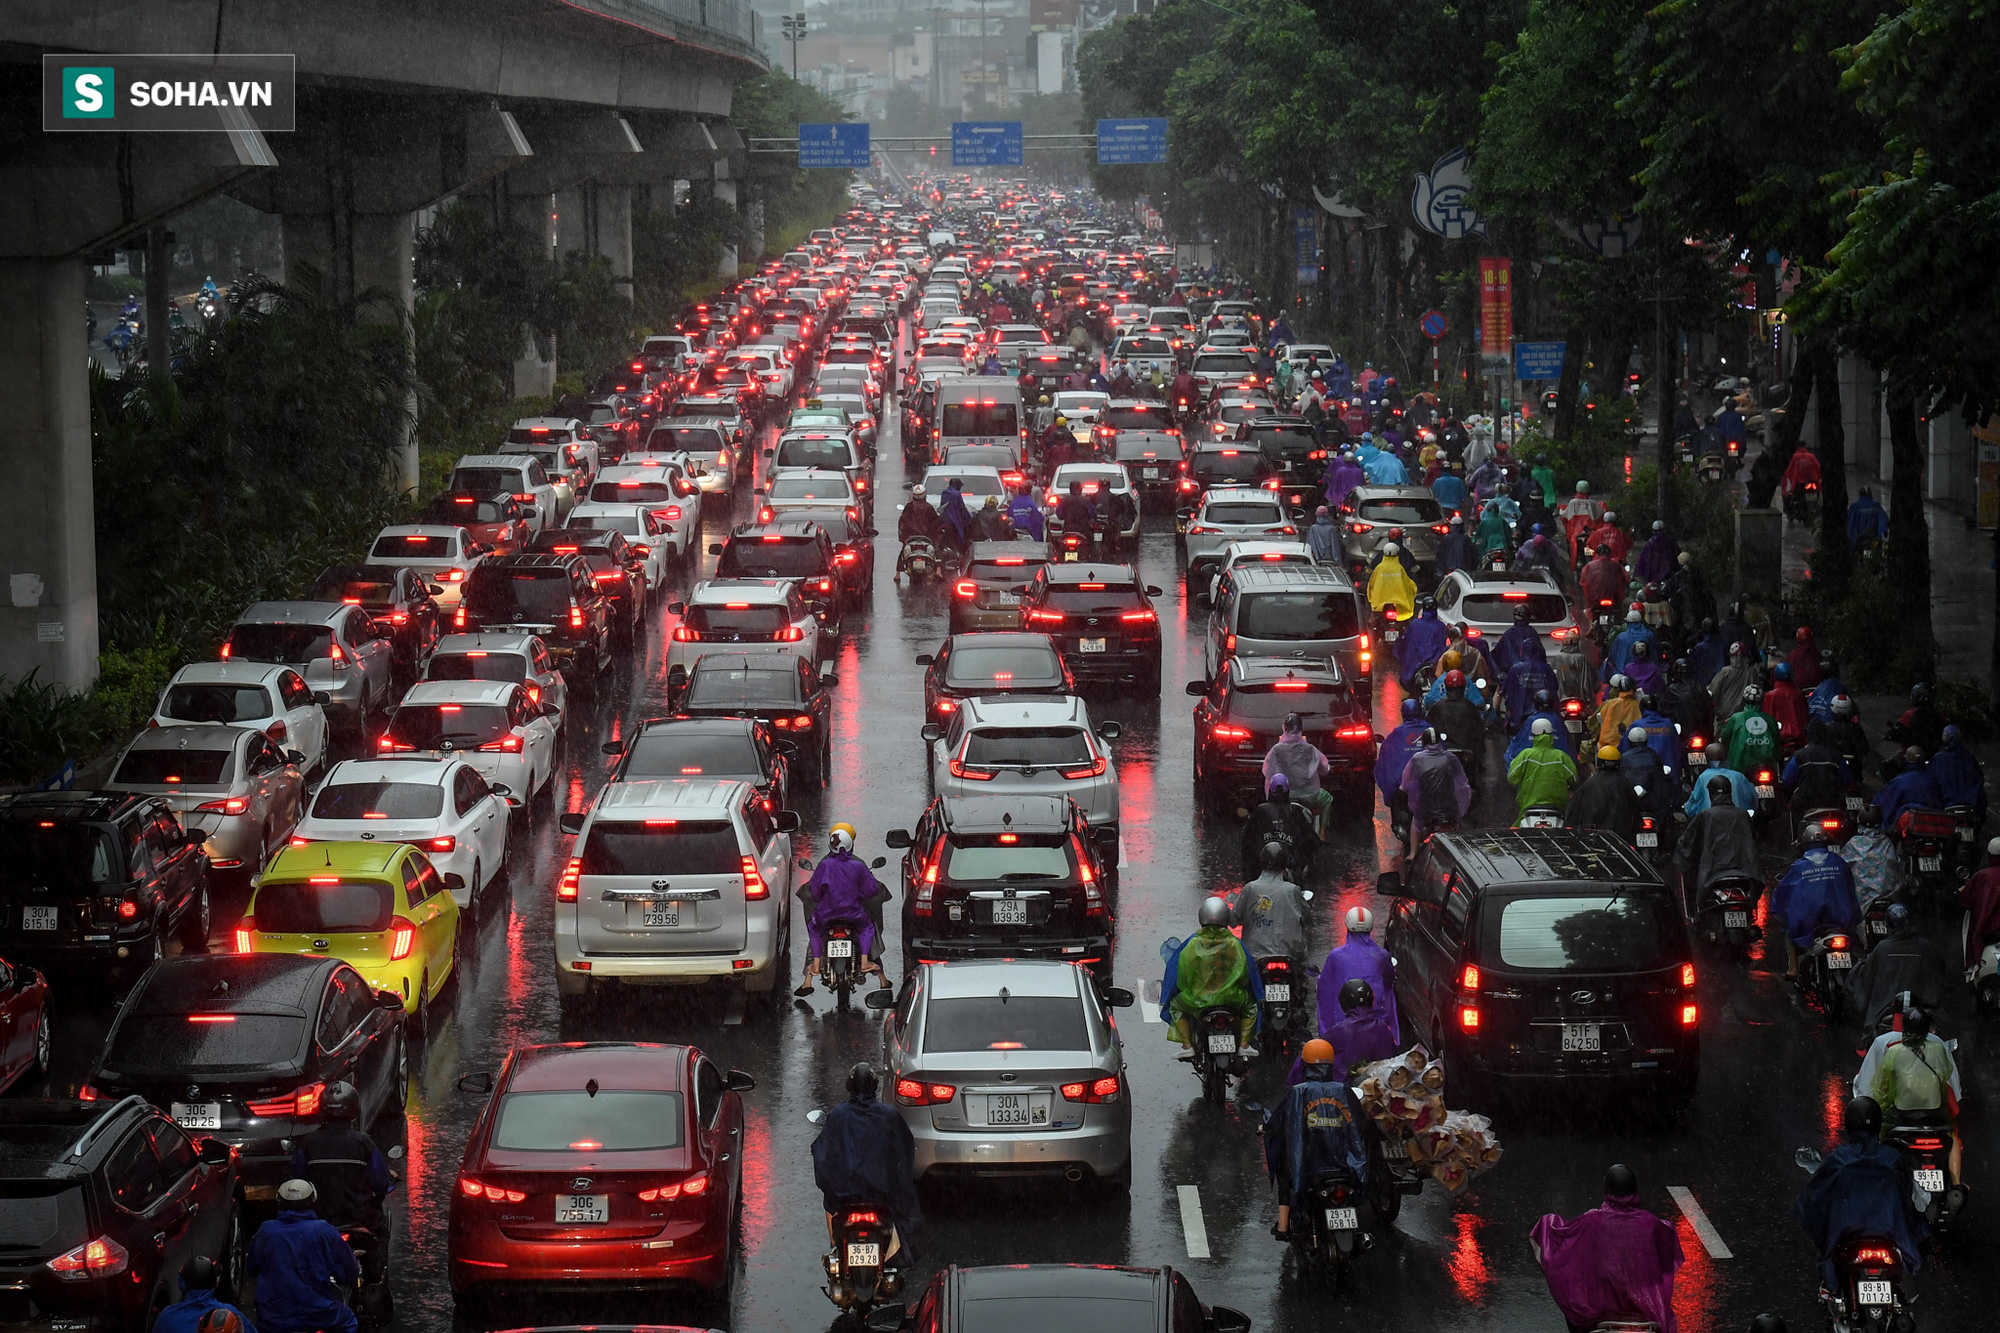 Đường phố Hà Nội tắc cứng trong mưa sáng đầu tuần, ô tô dàn hàng 6 chiếm hết lòng đường - Ảnh 3.